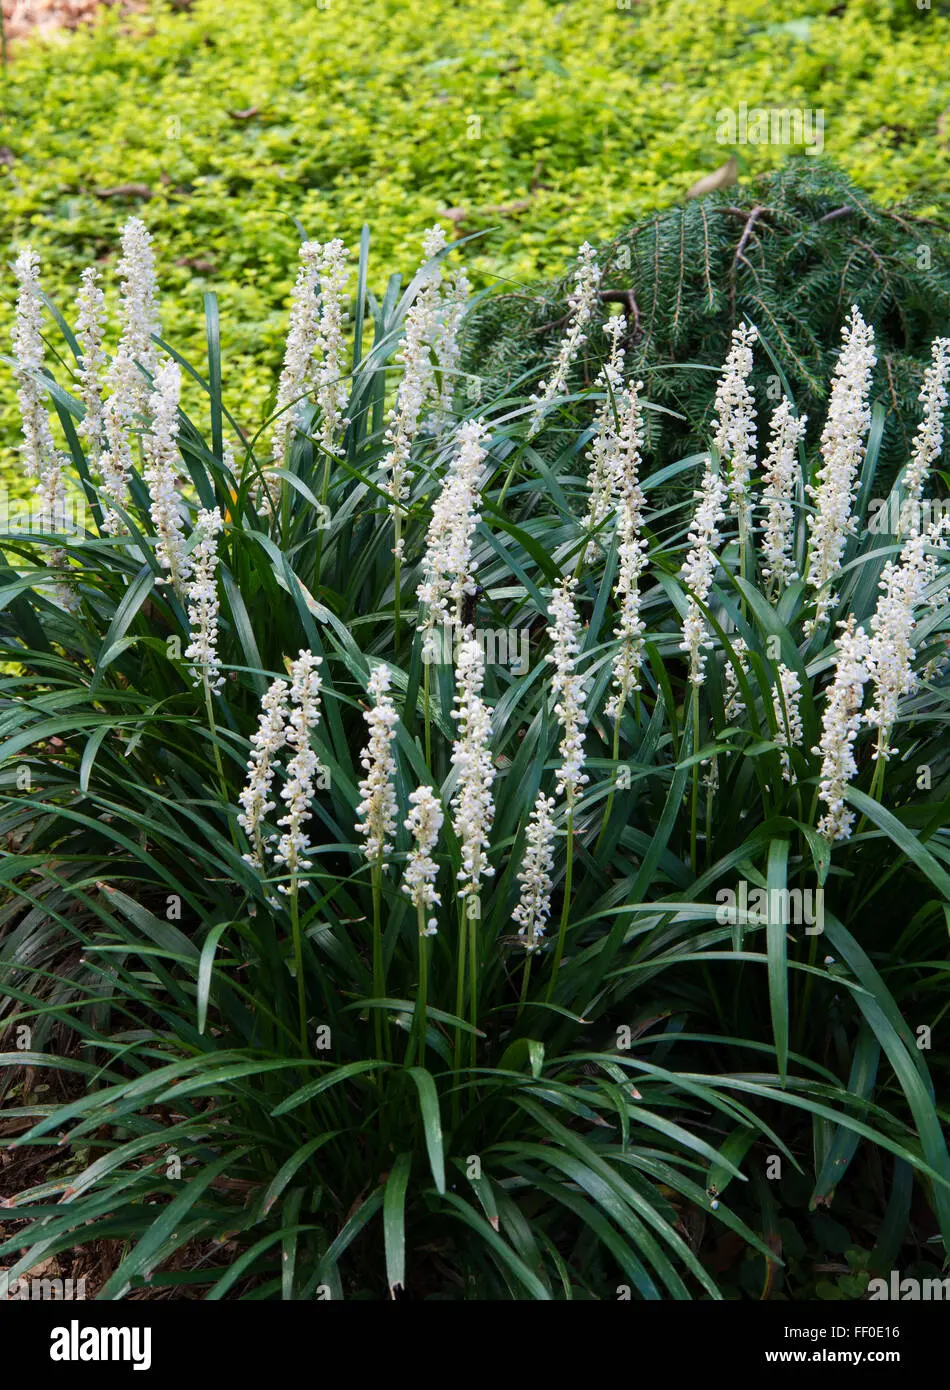 liriope flor blanca - Qué significa la palabra liriope